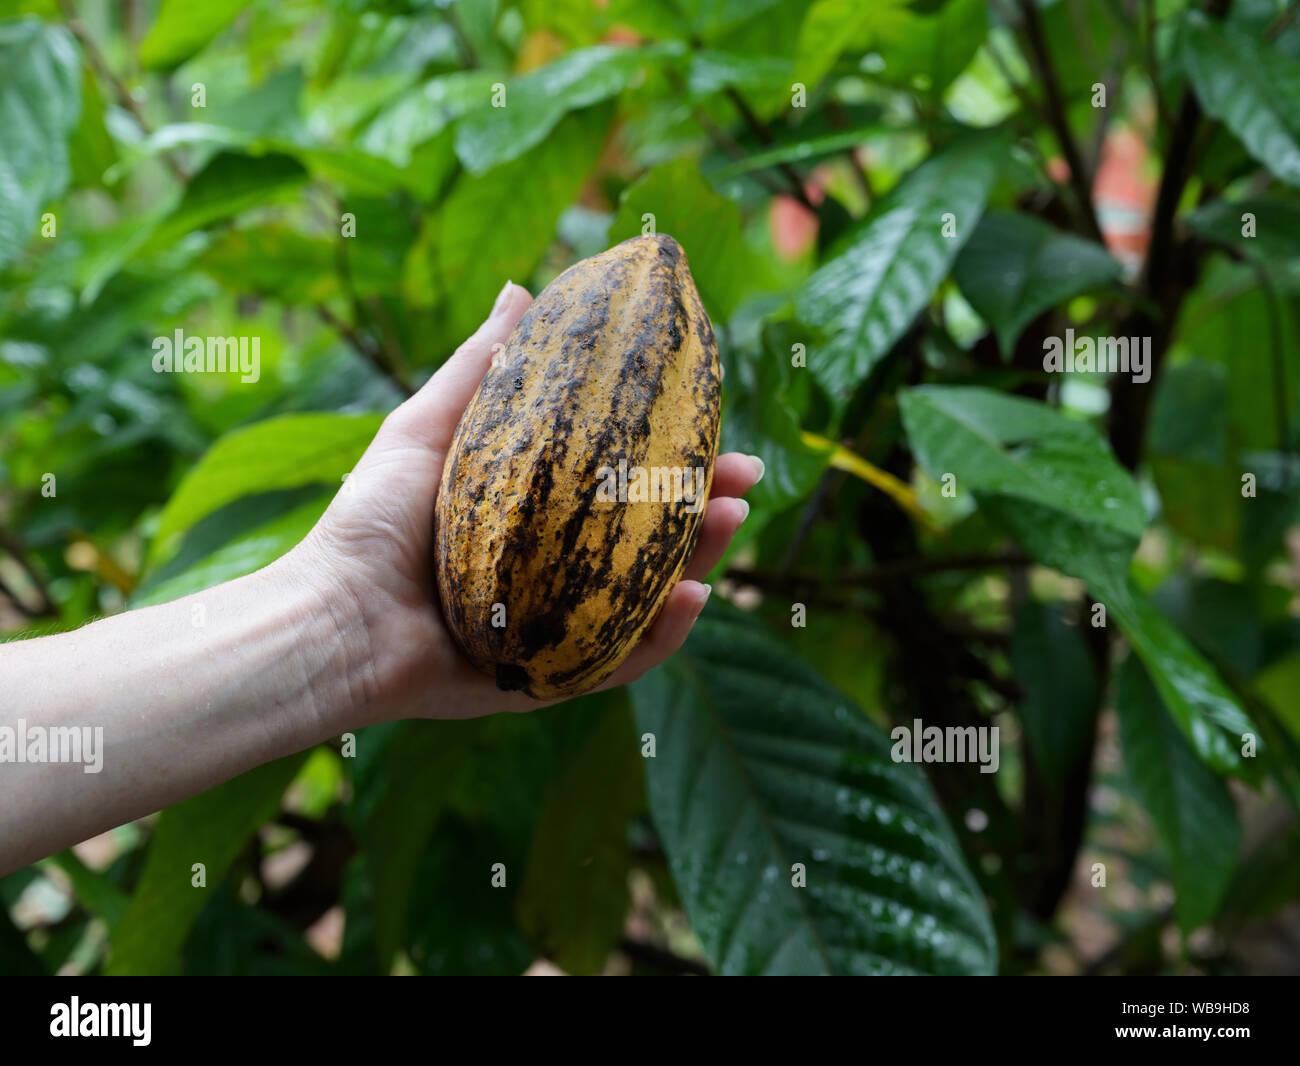 Vaina de cacao, maduras, maduras Foto de stock